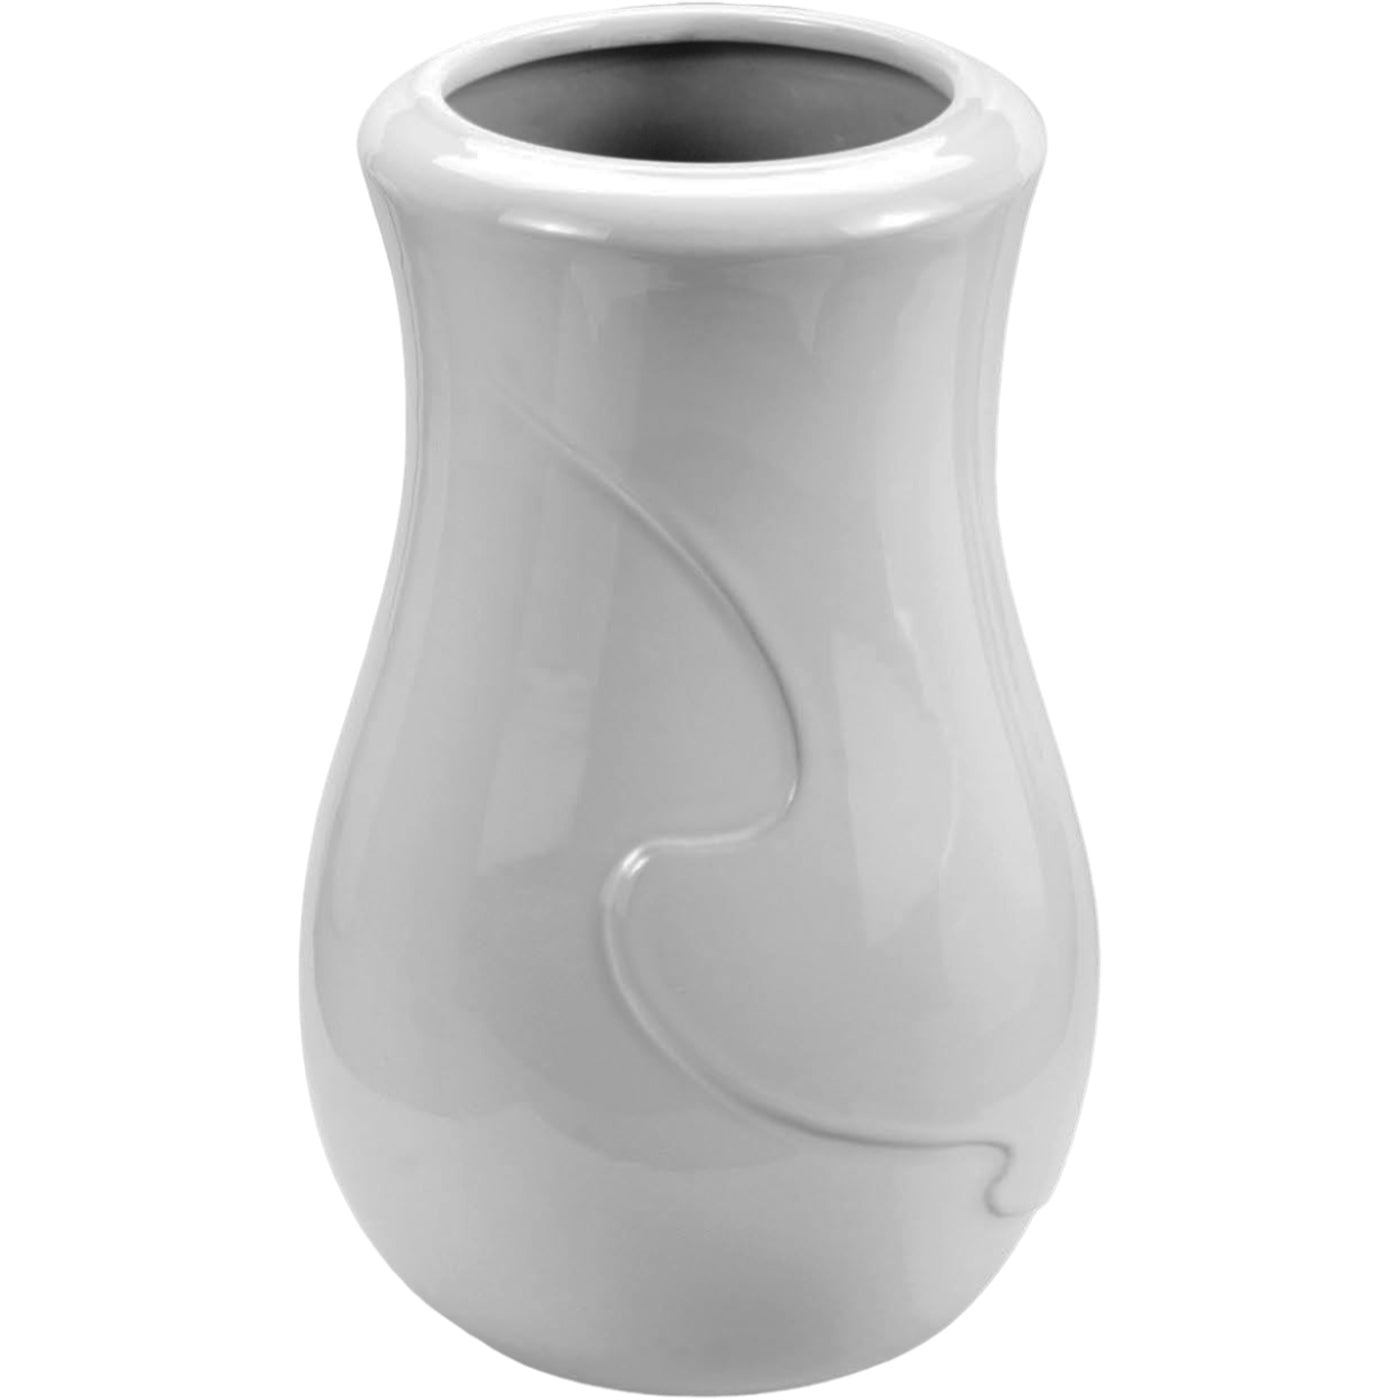 Grave vase Anna 21x13cm - 8.3x5.1in In white porcelain, ground attached ANN134T